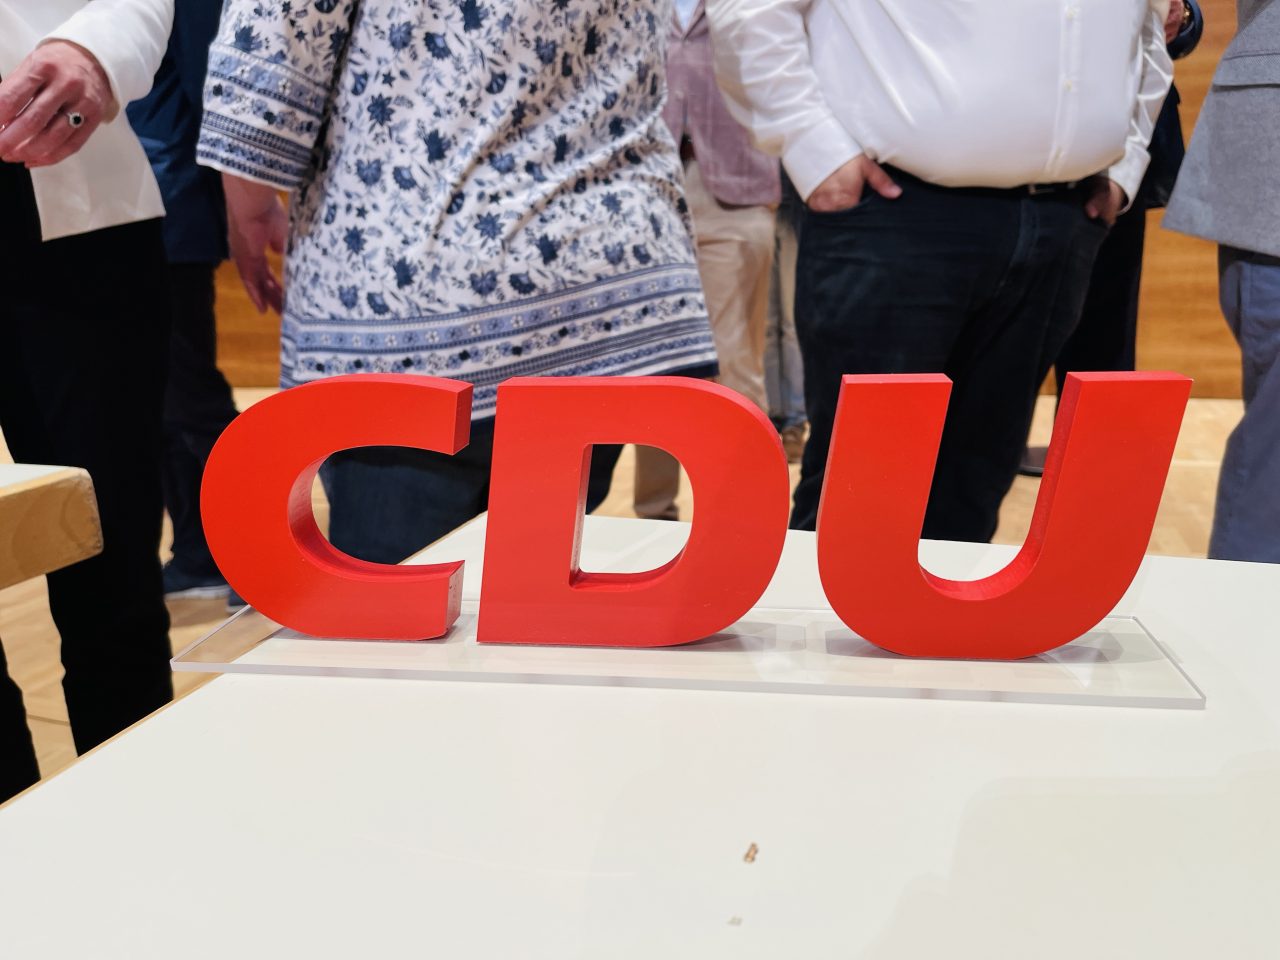 Team CDU